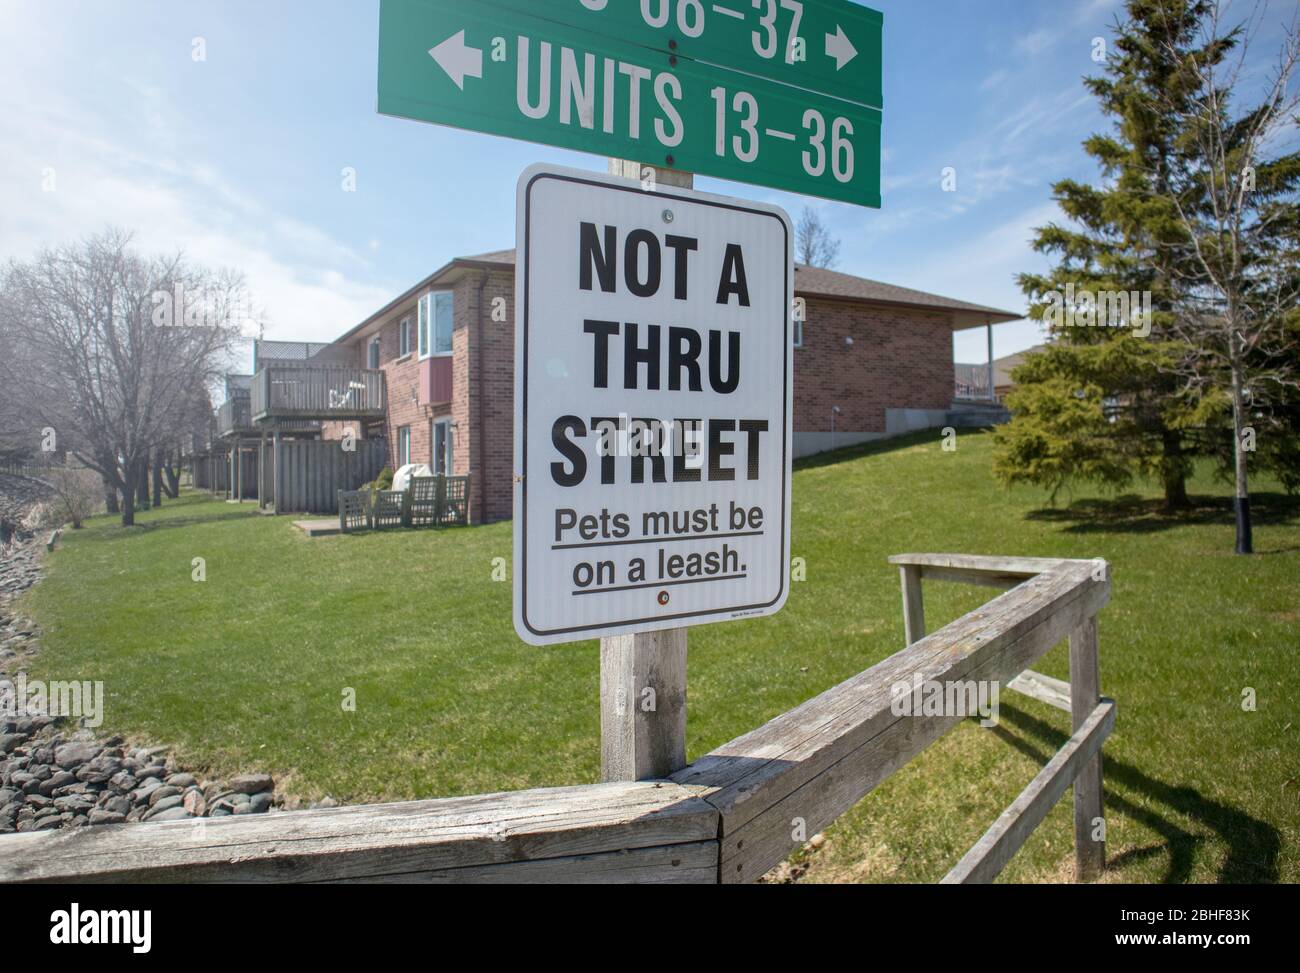 I cartelli ci dicono indicazioni e indirizzi, il modo non è 'attraverso strada', i cani devono essere sul guinzaglio. Il complesso è residenziale e tranquillo. Foto Stock